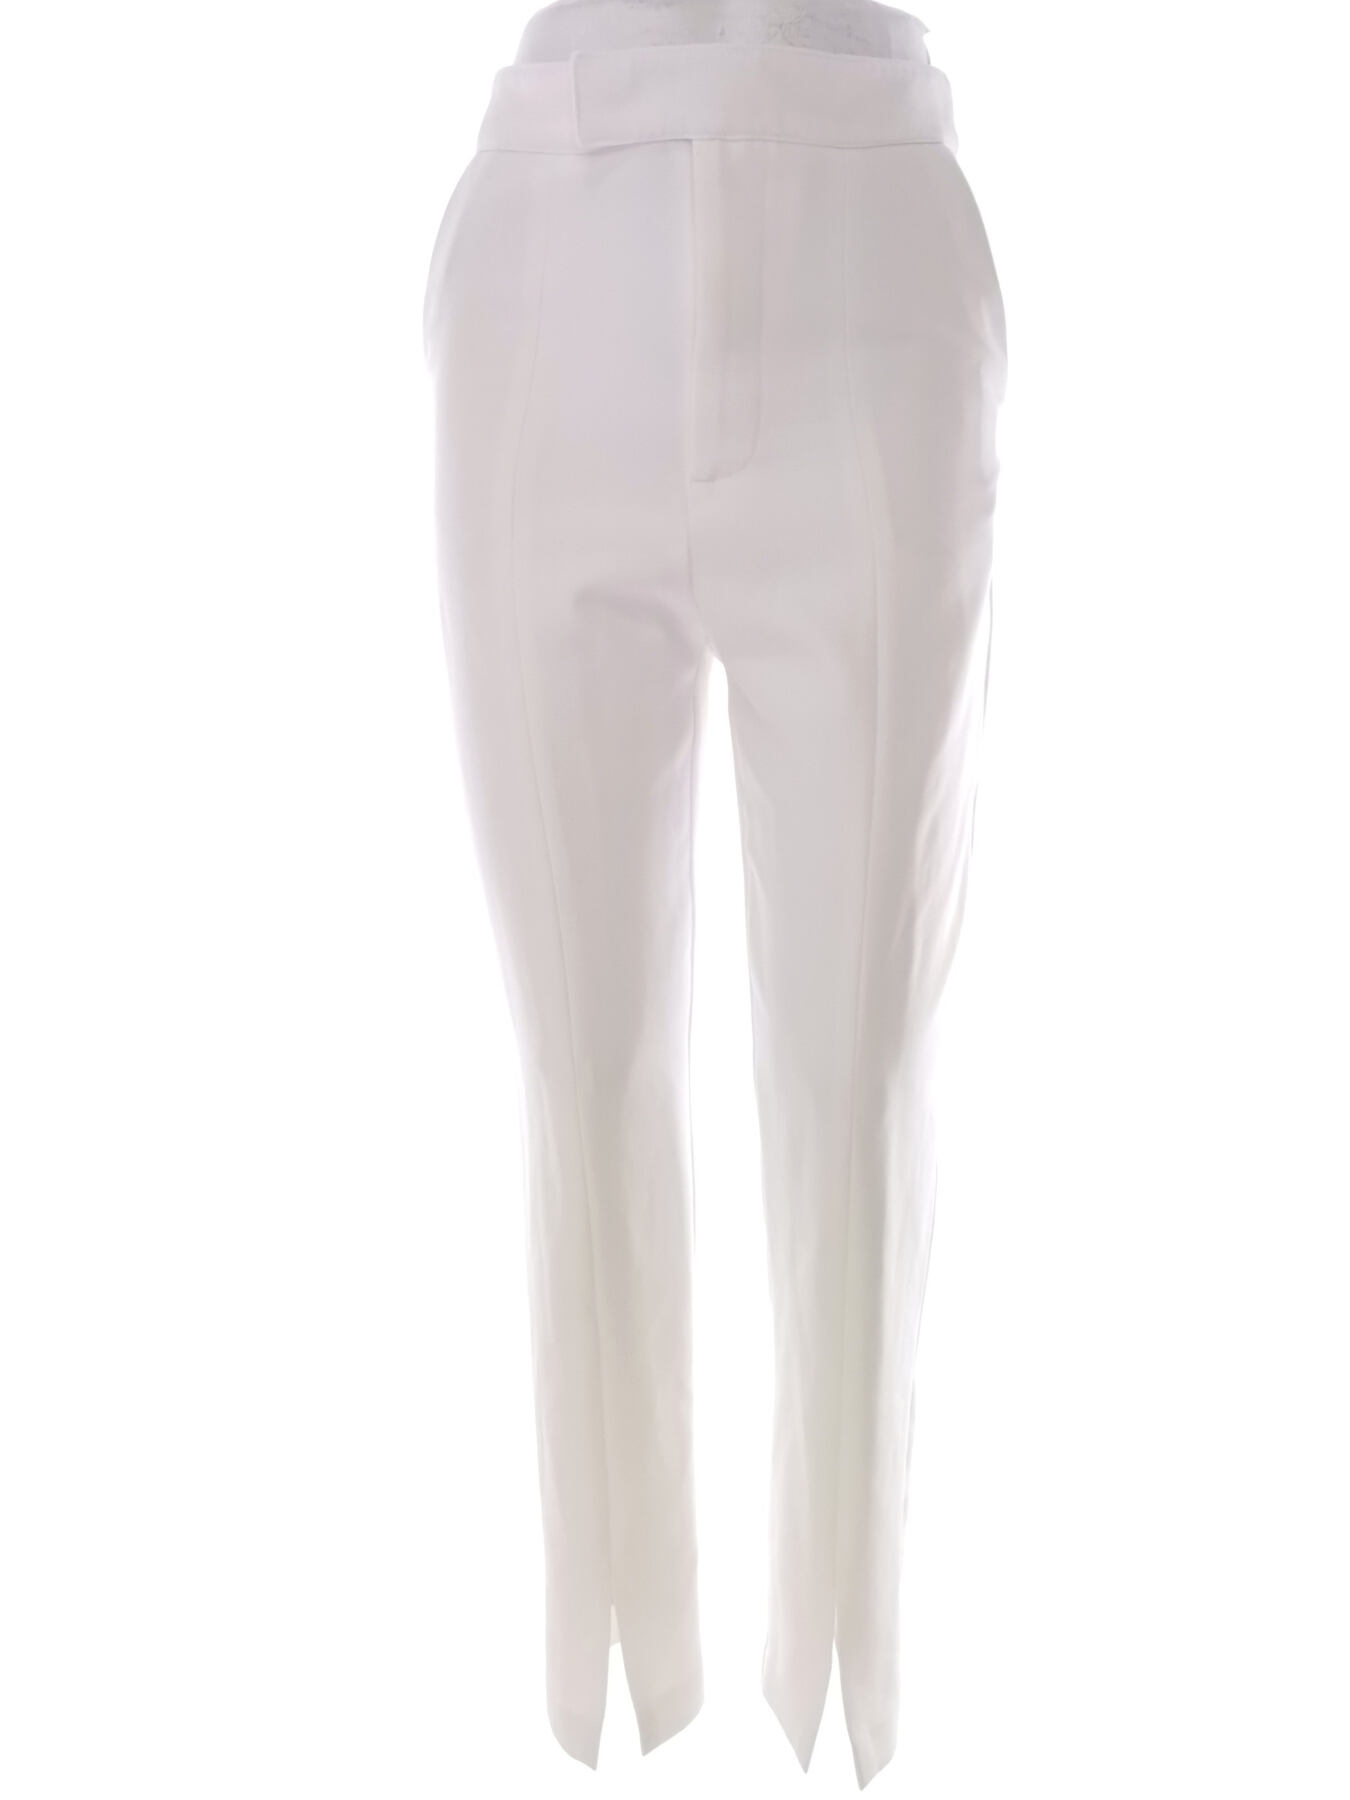 Stiletto Rozmiar 34/36 Kolor Biały Spodnie Eleganckie